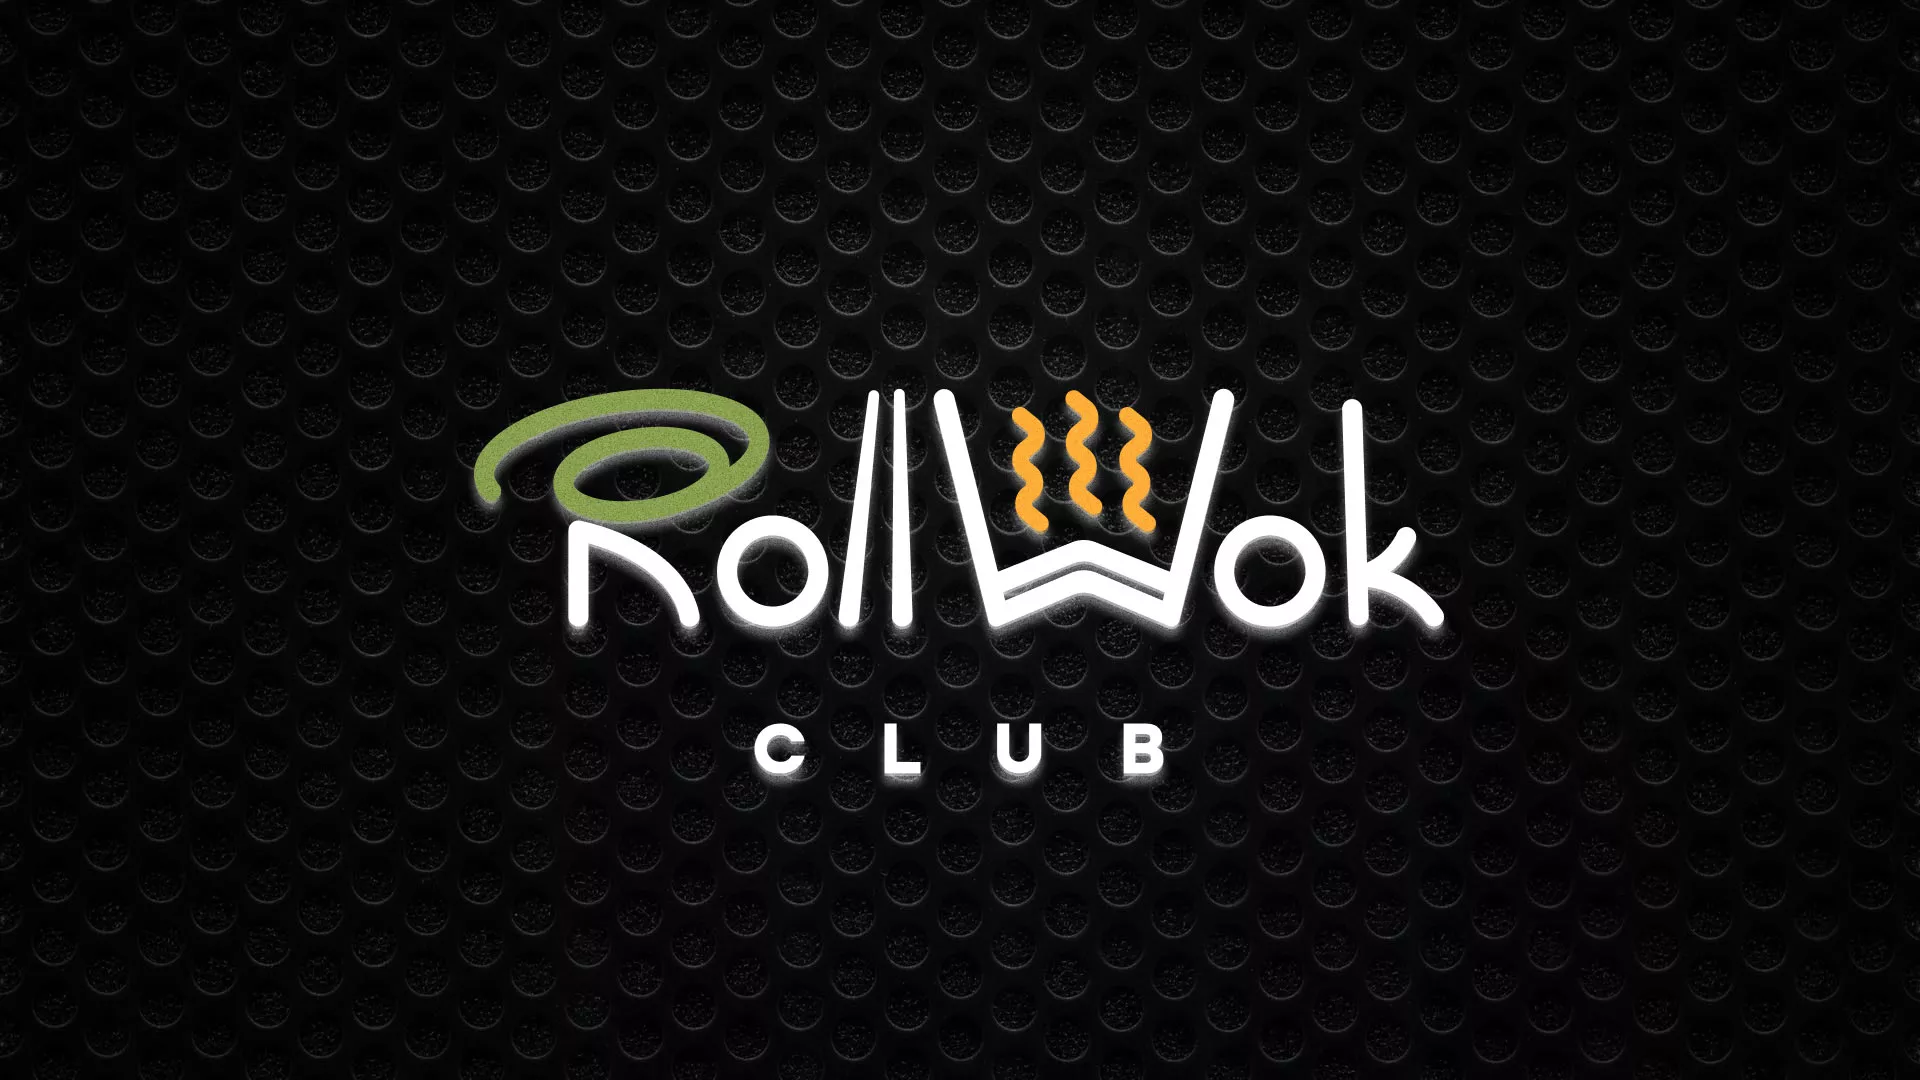 Брендирование торговых точек суши-бара «Roll Wok Club» в Новокузнецке